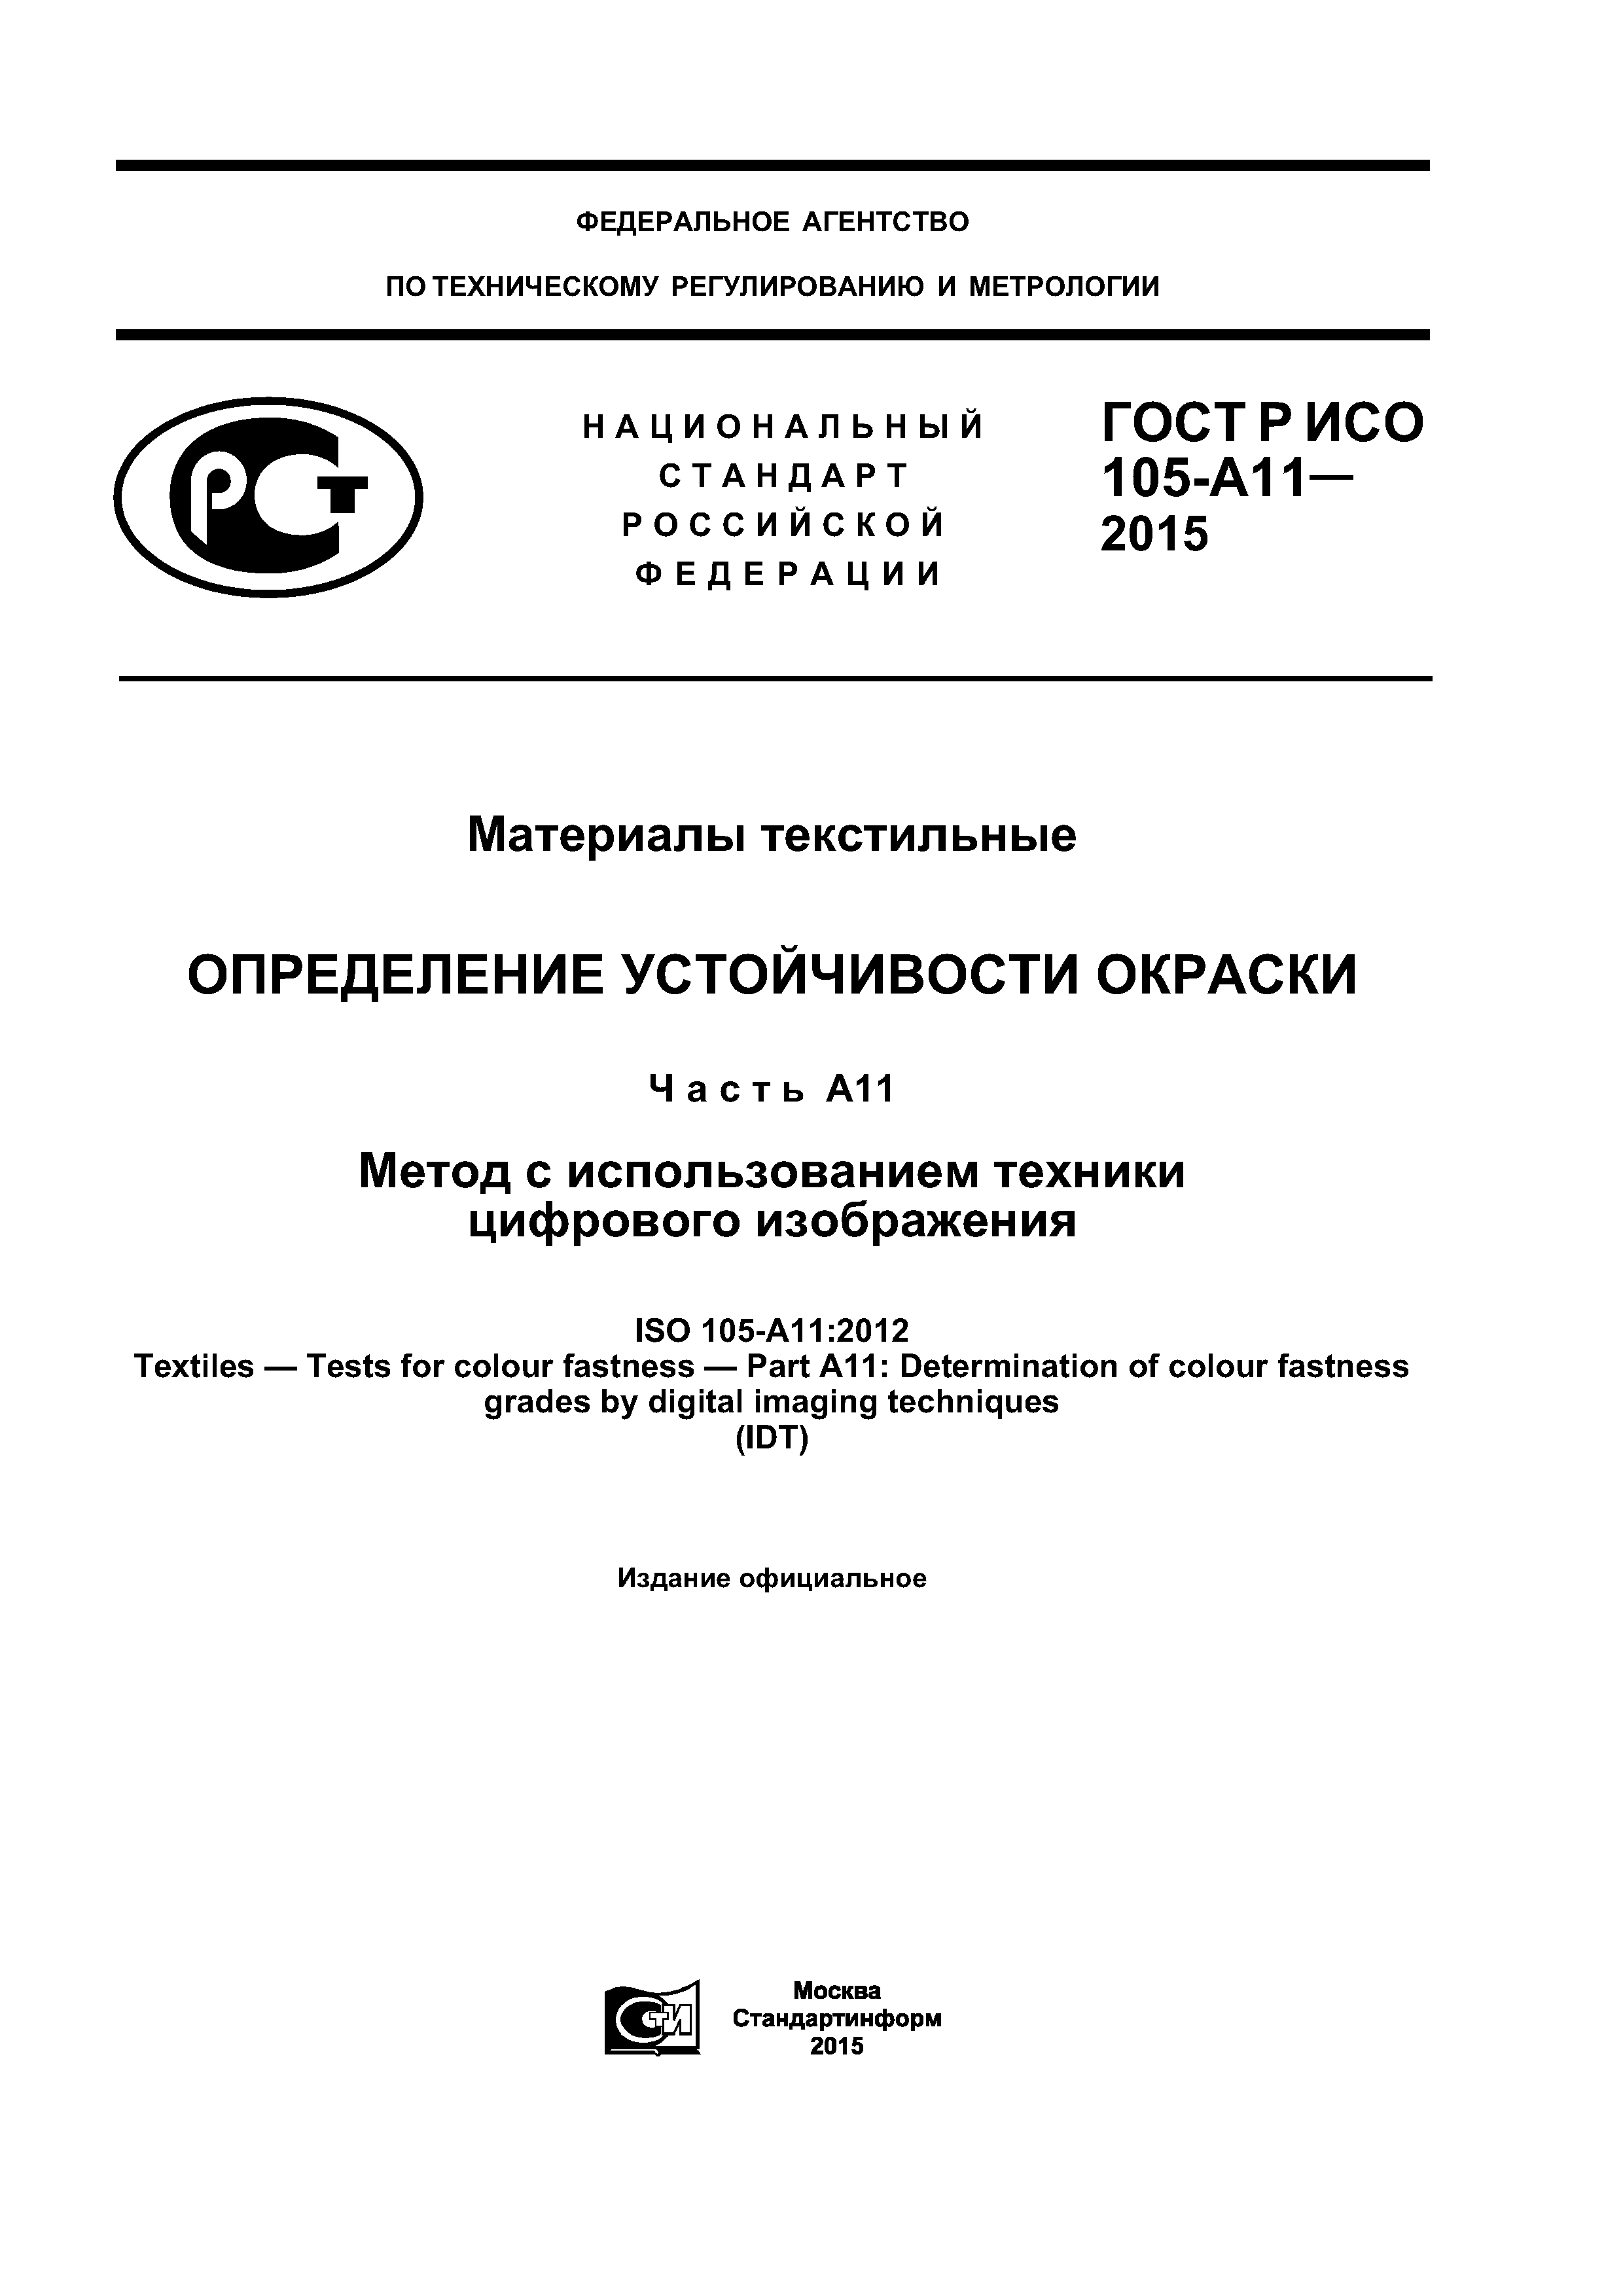 ГОСТ Р ИСО 105-А11-2015